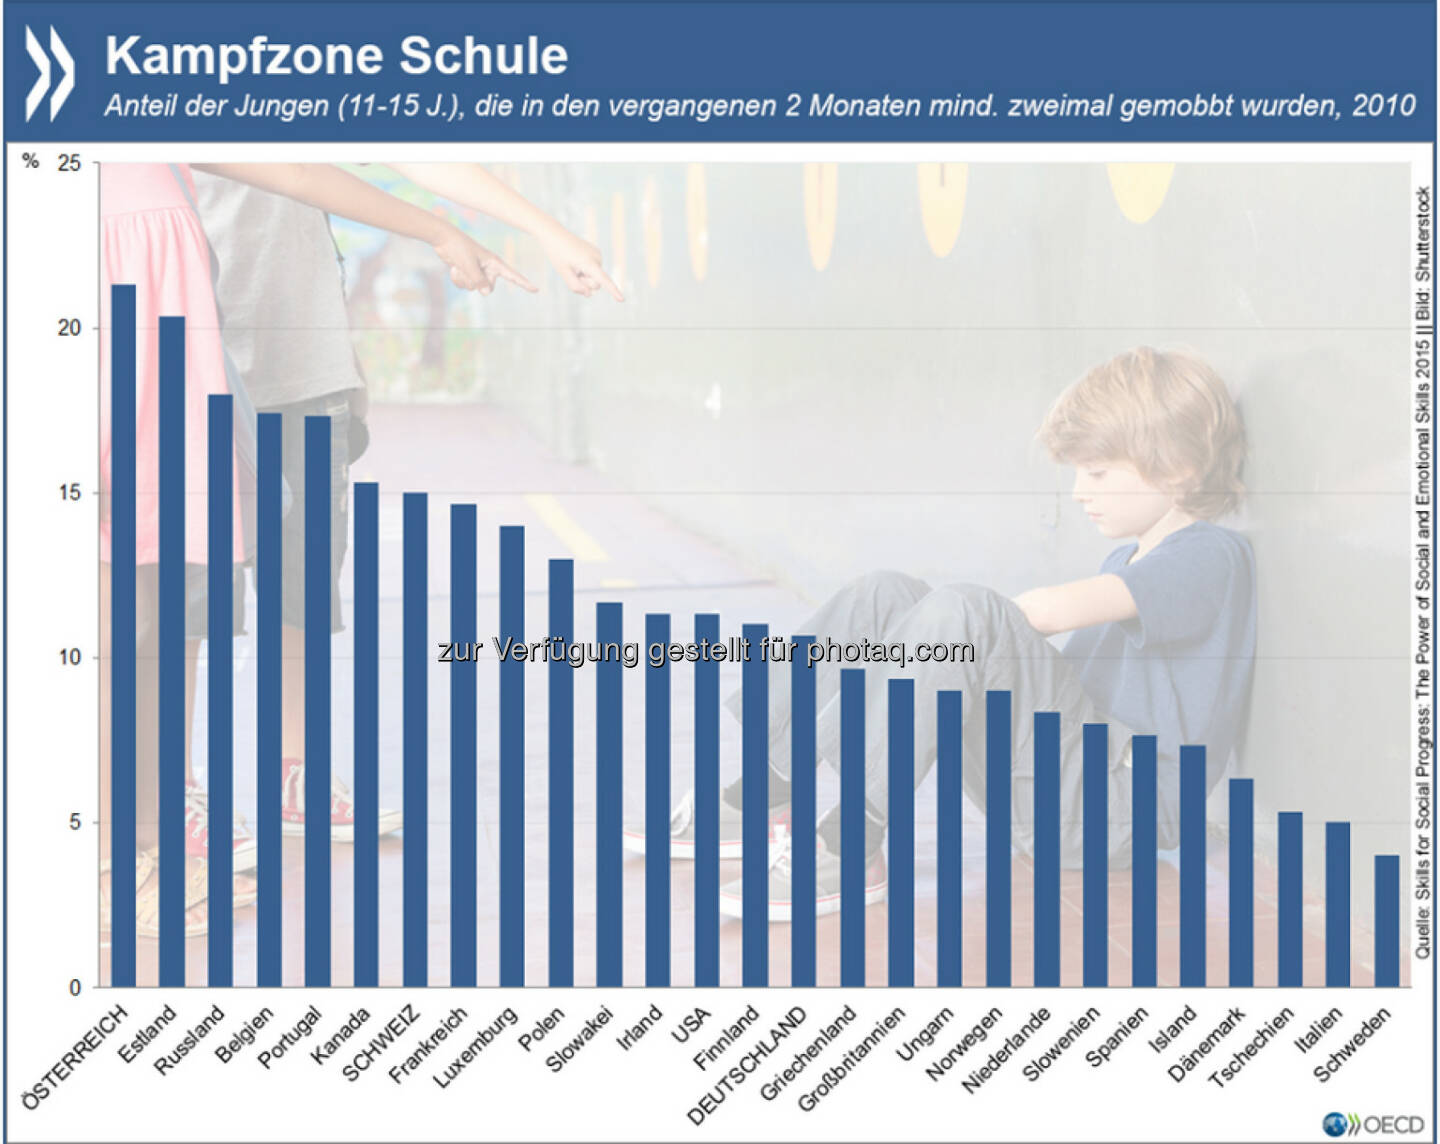 Ausweitung der Kampfzone: Mindestens einer von zehn Jungen im Alter von 11 bis 15 Jahren wird im OECD-Durchschnitt in der Schule gemobbt. In Österreich gibt sogar jeder fünfte Junge an, kürzlich eine solche Erfahrung gemacht zu haben.
Mehr zum Thema: http://bit.ly/1QT1nxk (S. 20)